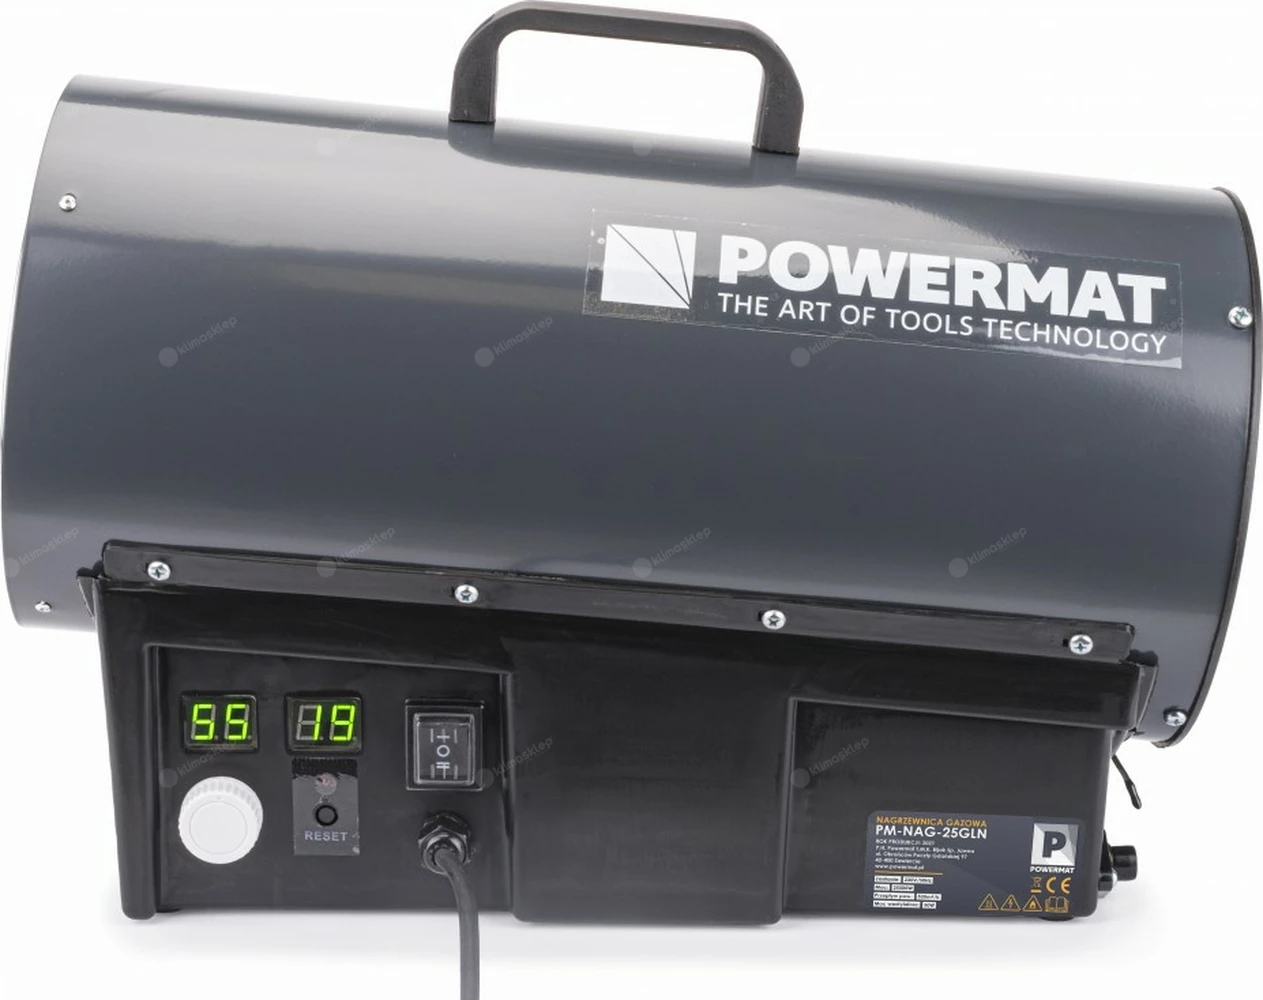 Nagrzewnica Powermat PM-NAG-25GLN z termostatem